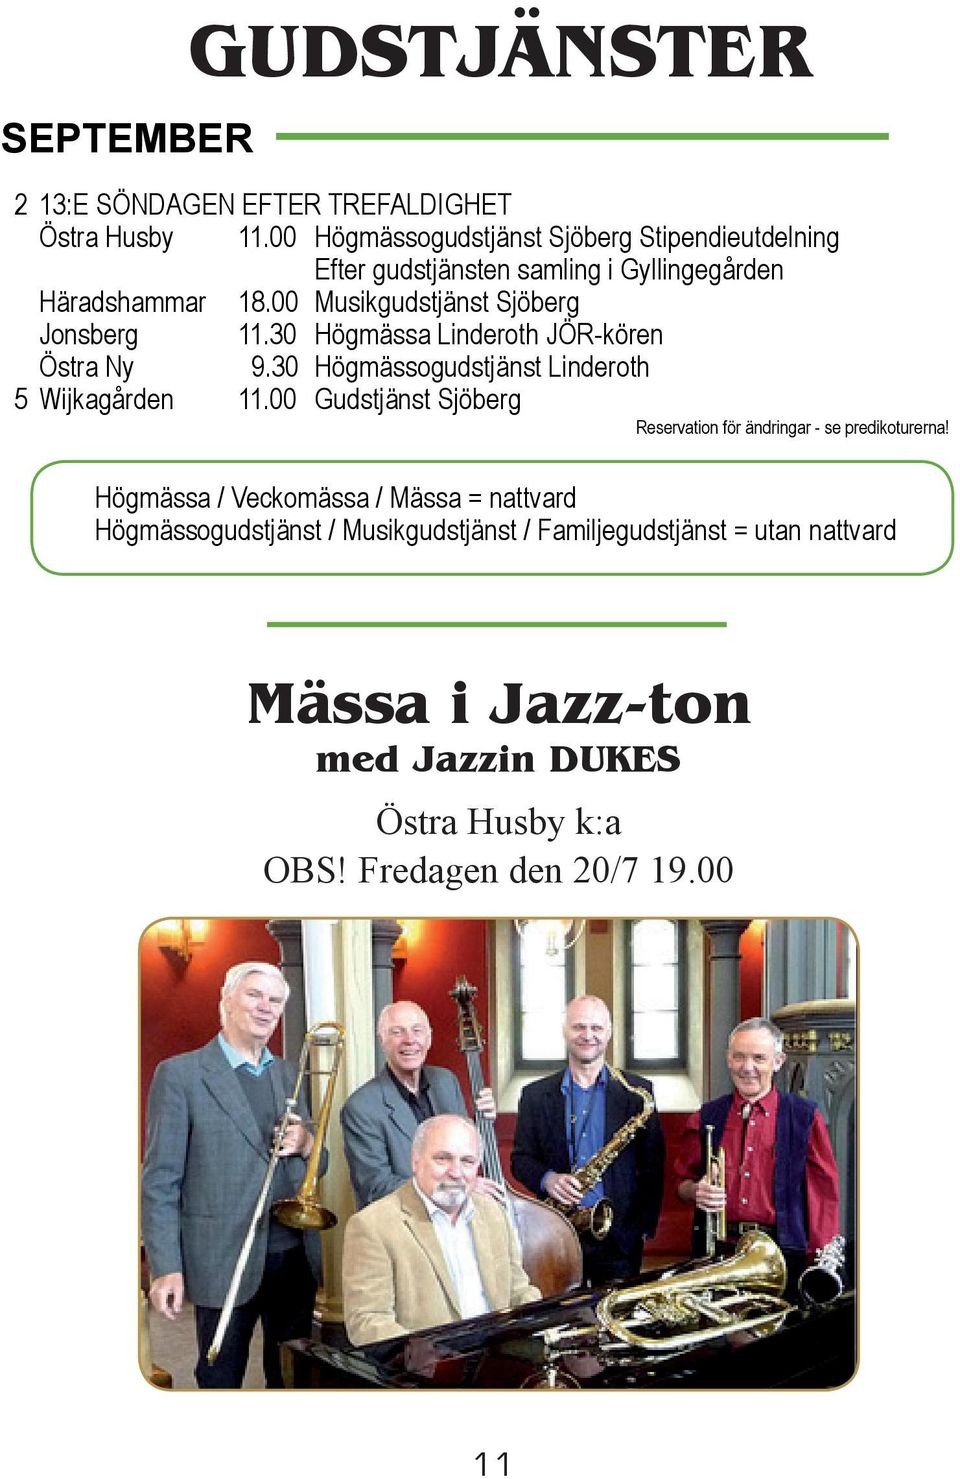 00 Musikgudstjänst Sjöberg Jonsberg 11.30 Högmässa Linderoth JÖR-kören Östra Ny 9.30 Högmässogudstjänst Linderoth 5 Wijkagården 11.